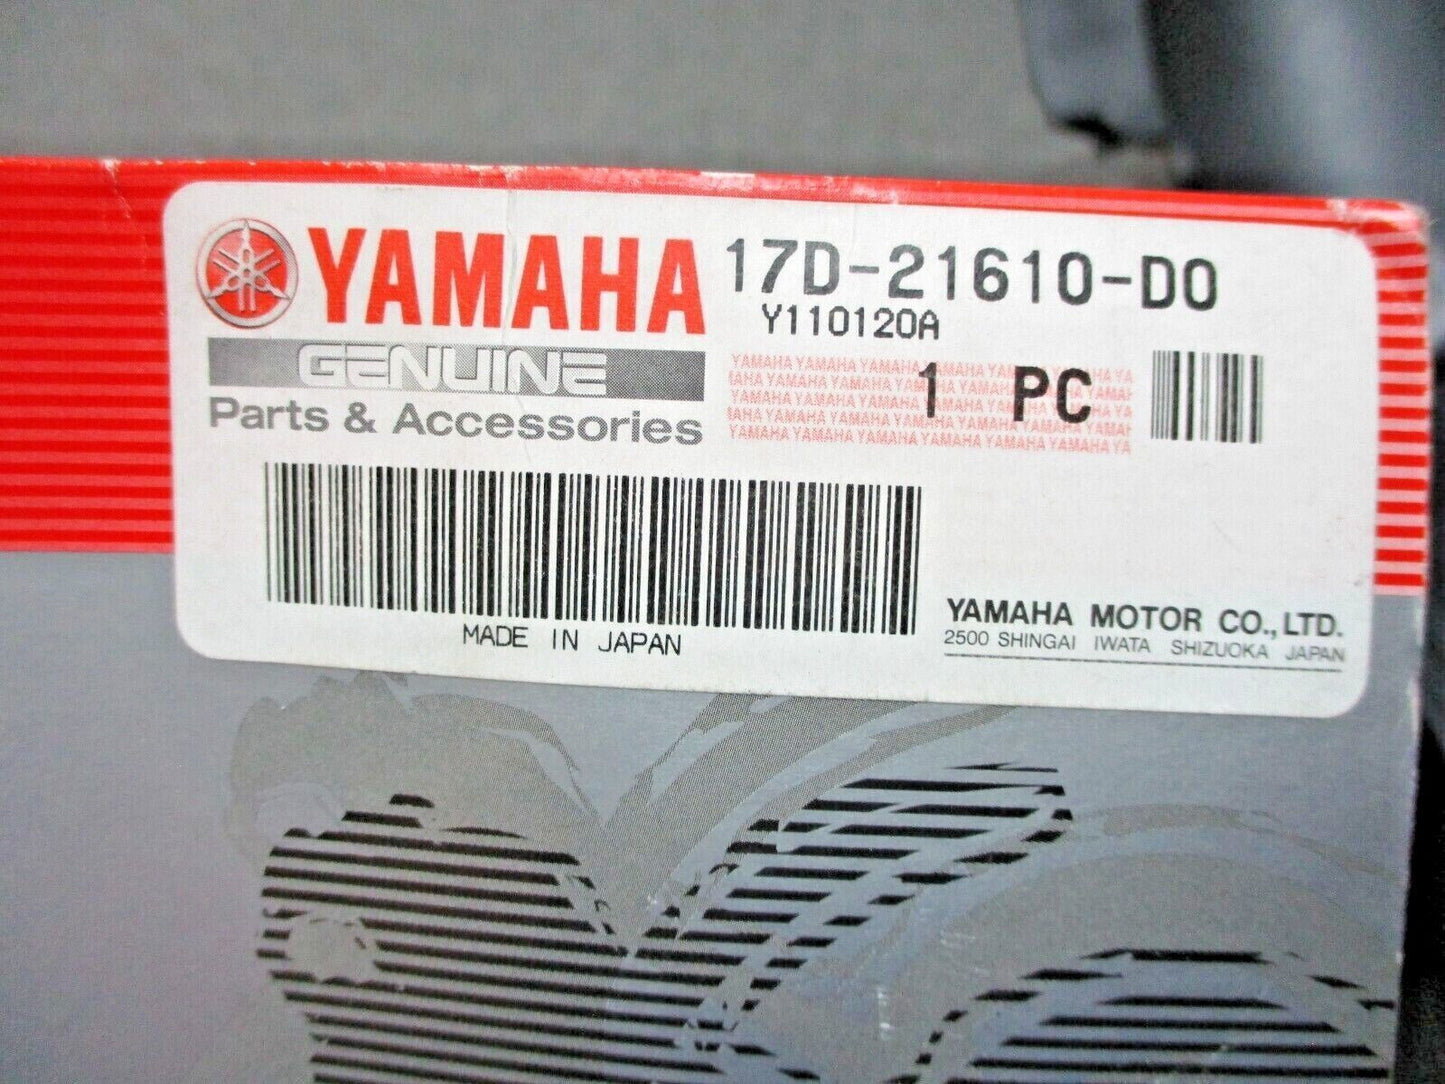 Yamaha OEM 2011 YZ250F Black Rear Fender 17D-21610-D0-00